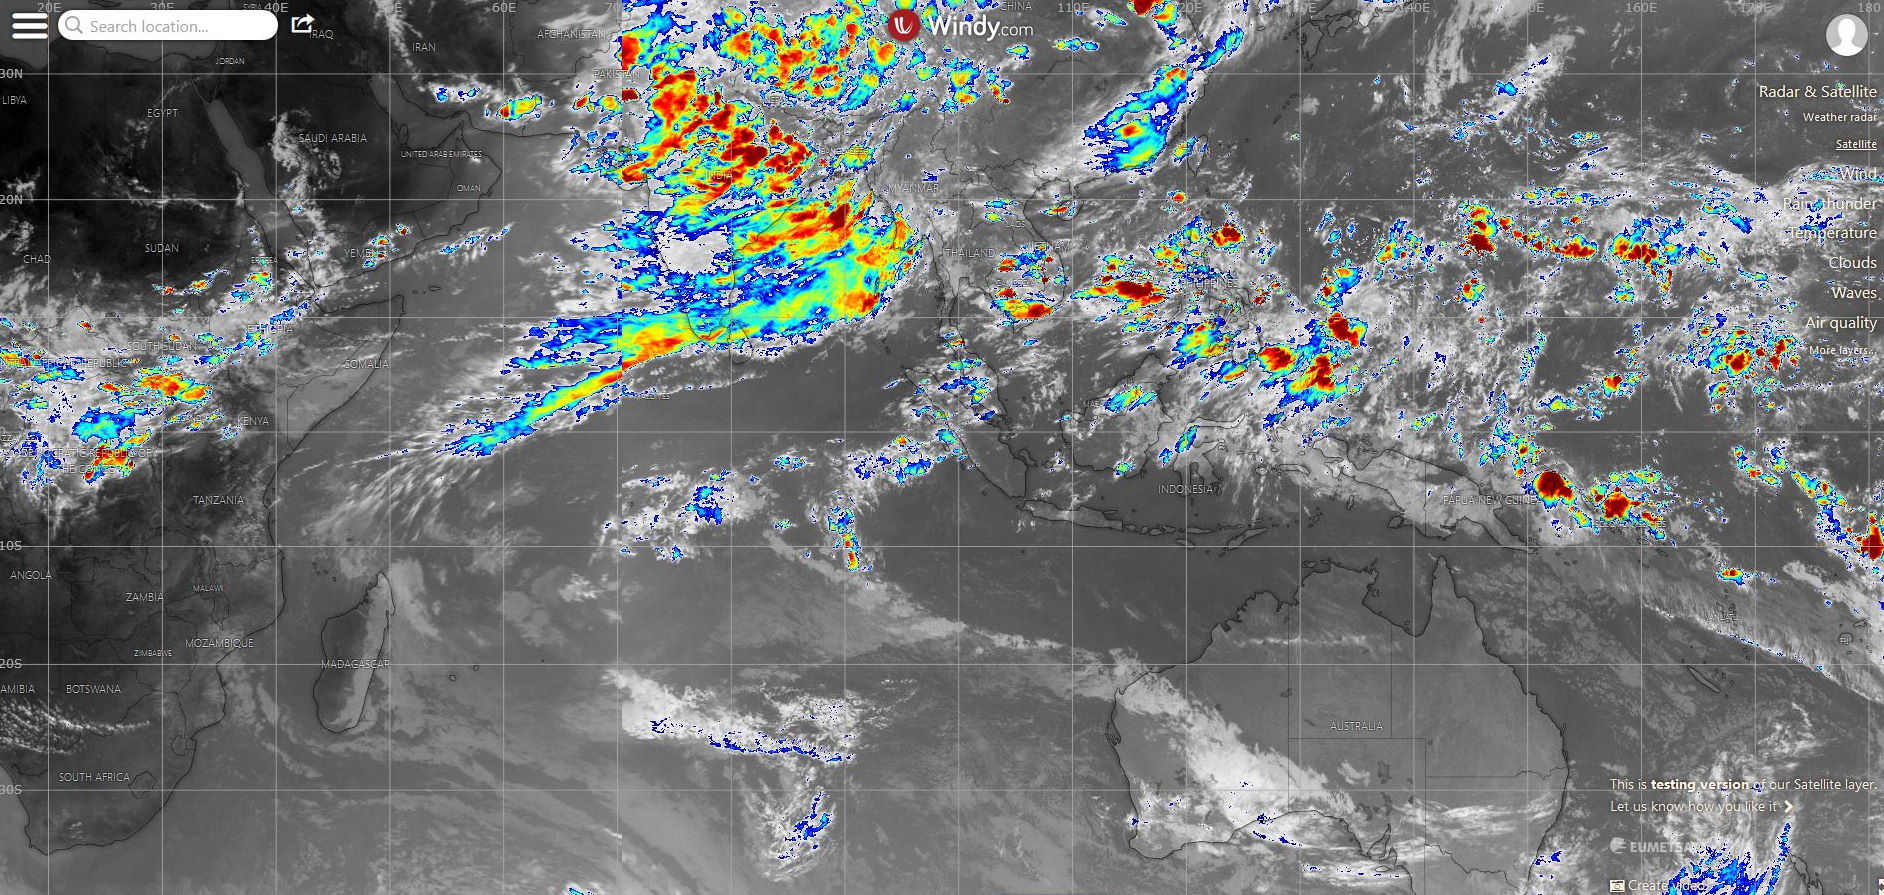 17h40. Océans Indien et Pacifique. Sur l'Indien la mousson est active sur la Grande Péninsule alors que les typhons(=cyclones) restent anormalement discrets sur le Pacifique pour le moment.